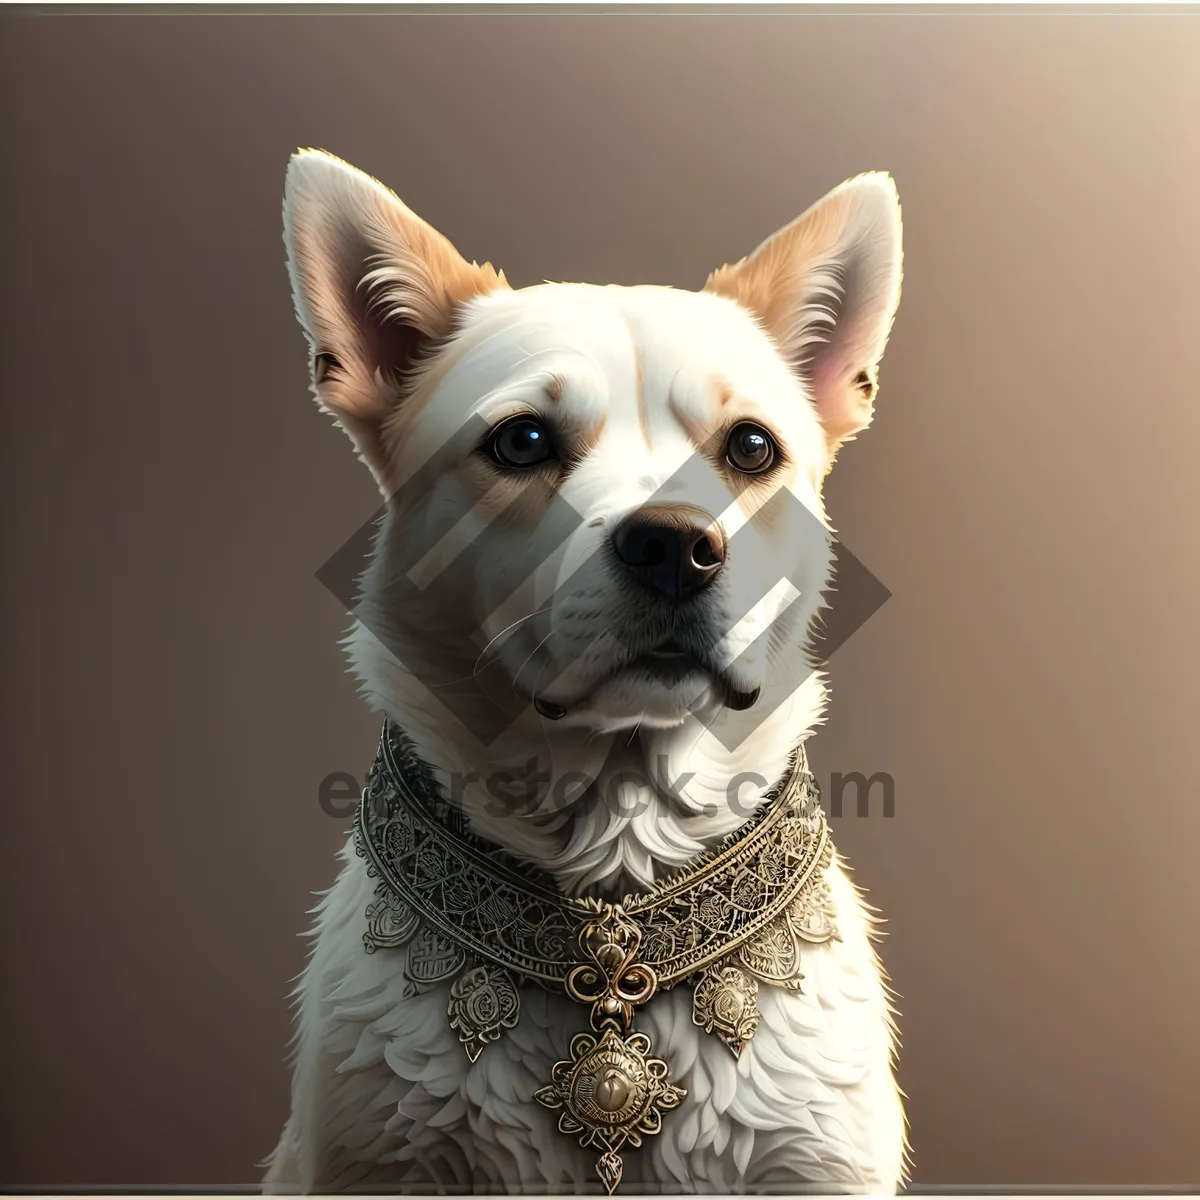 Picture of Purebred Bulldog Puppy - Adorable Canine Companion